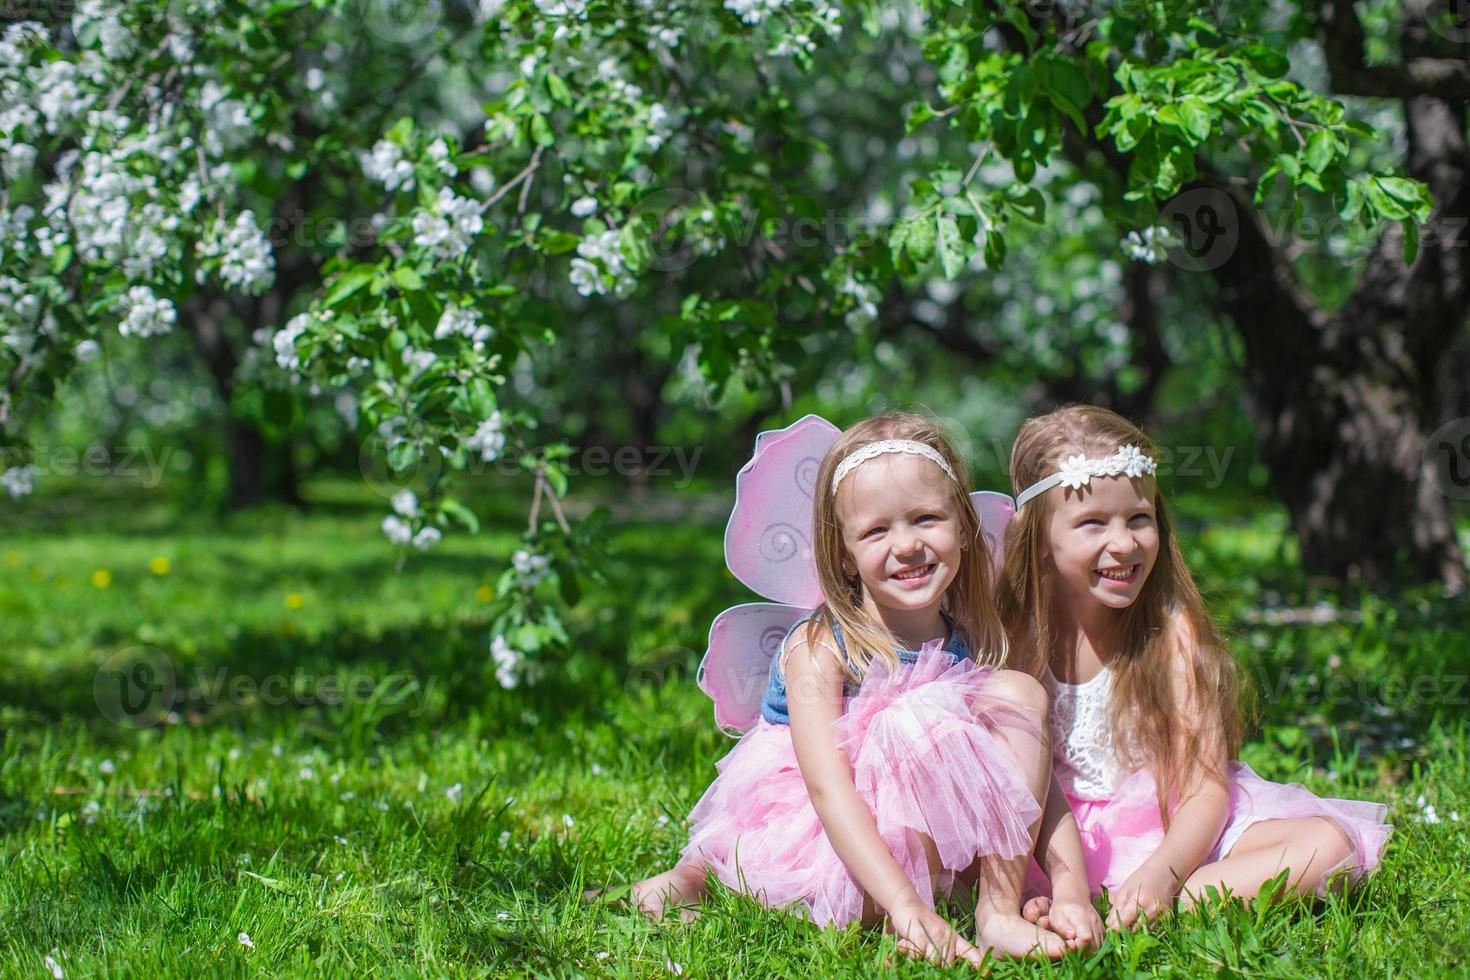 petites filles adorables avec des ailes de papillon dans le verger de pommiers en fleurs photo